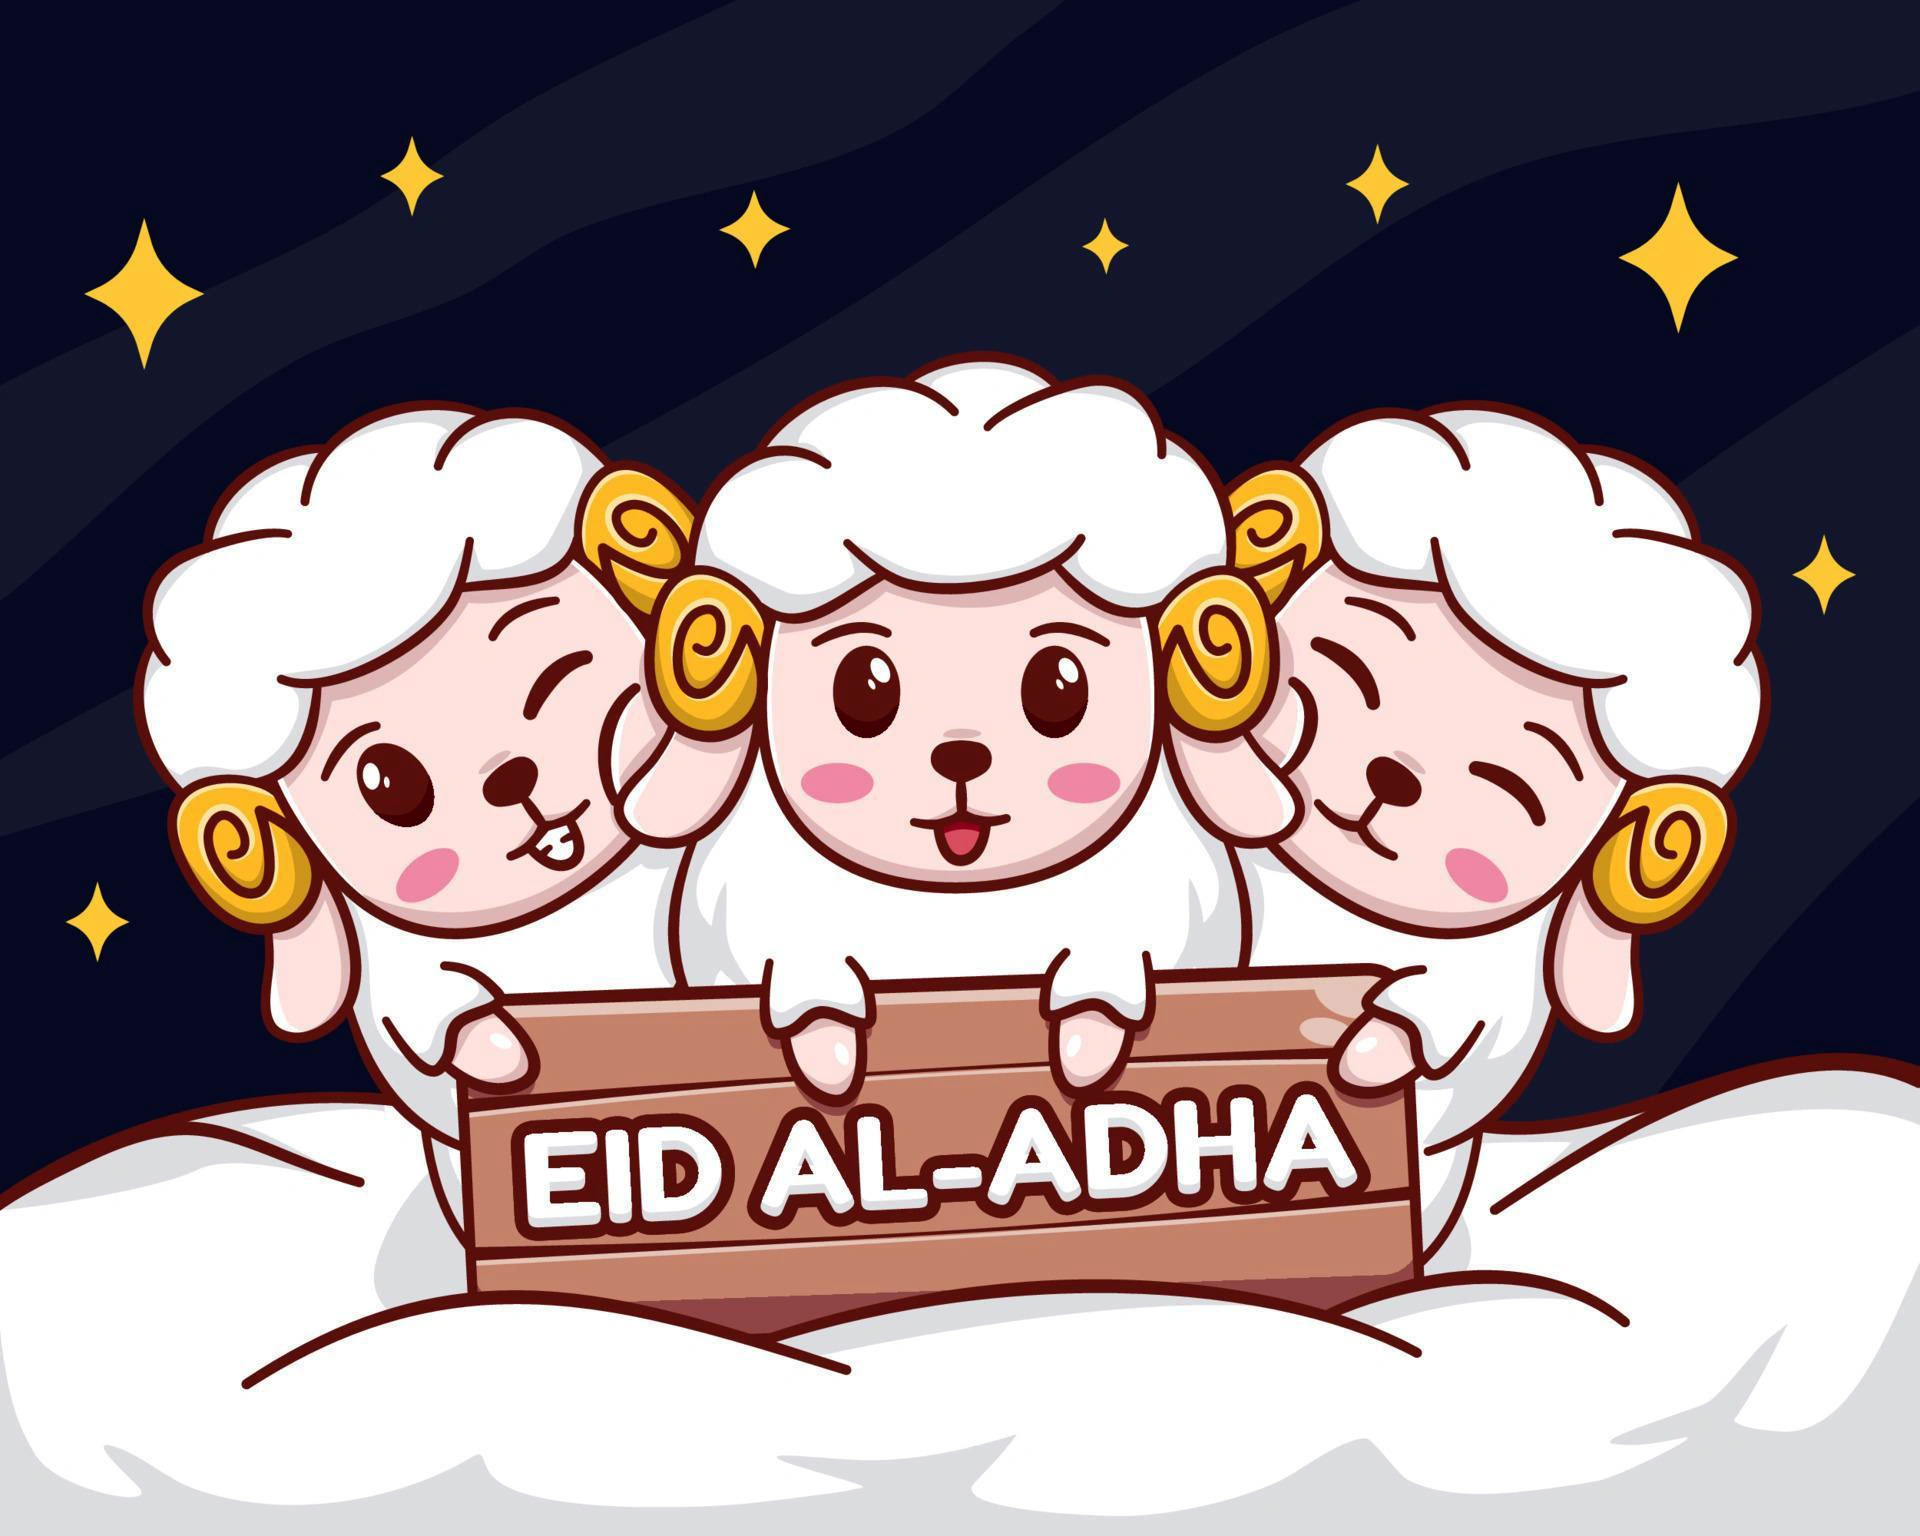 eid al adha mubarak with cute sheep cartoon illustration vector